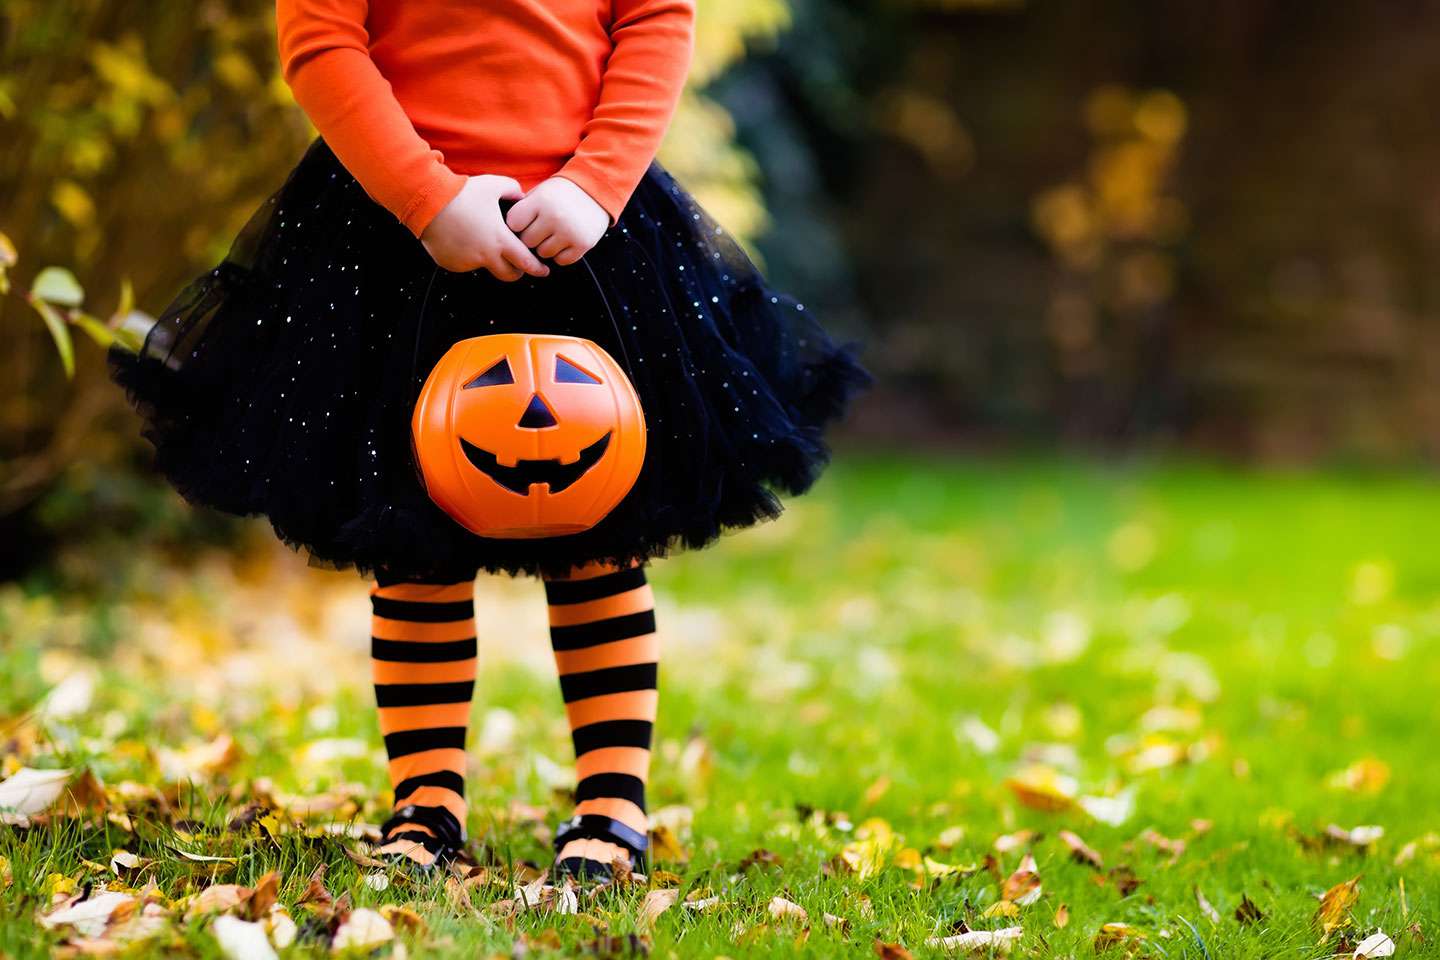 Girl holding a Halloween pumpkin